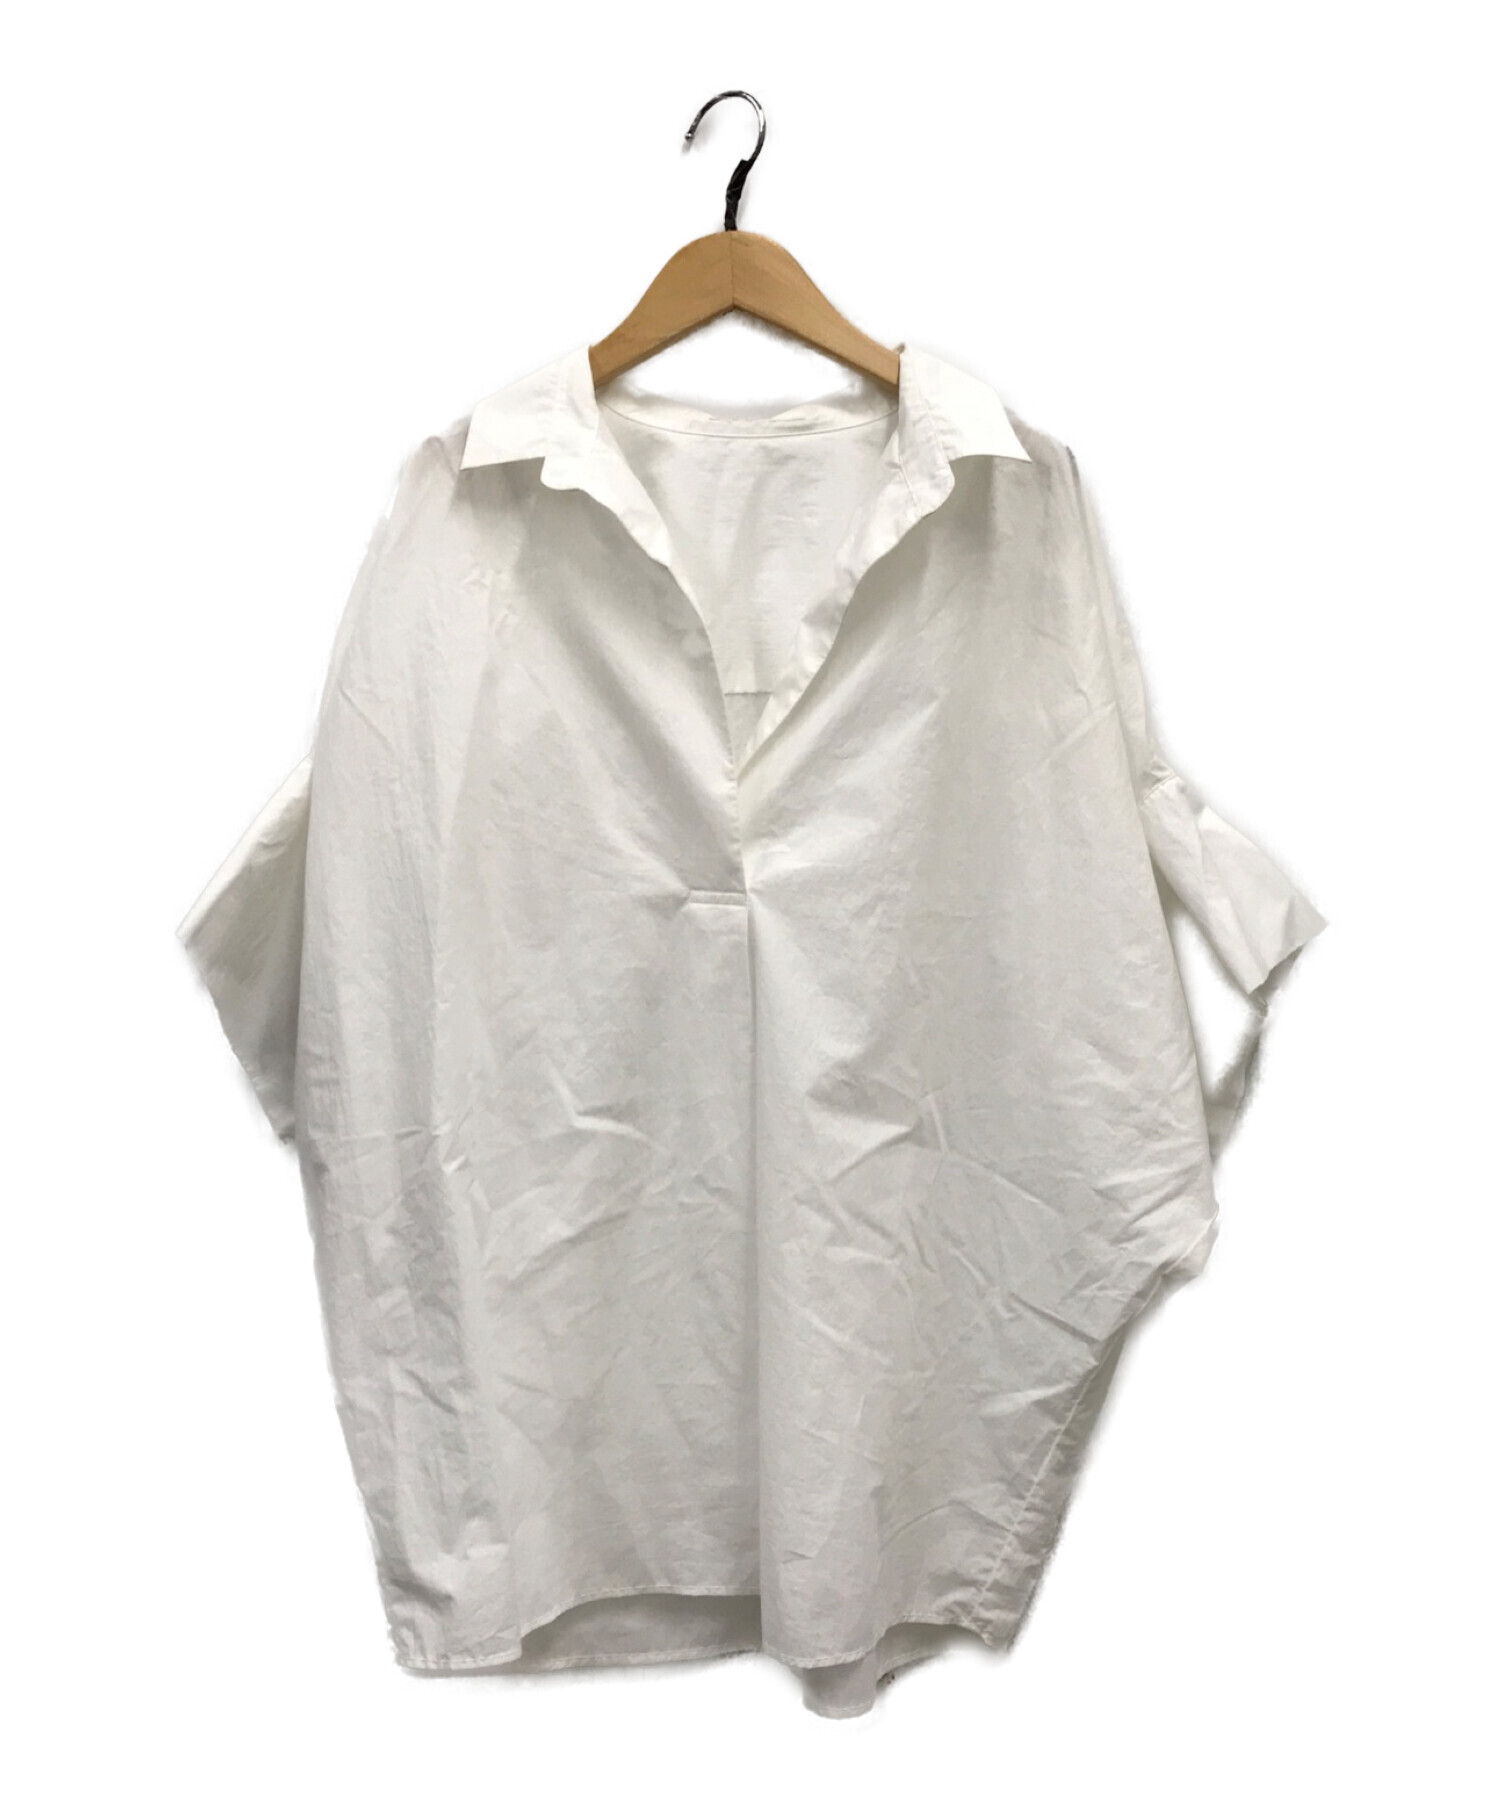 Plage (プラージュ) 抜け襟オーバーシャツ ホワイト サイズ:FREE